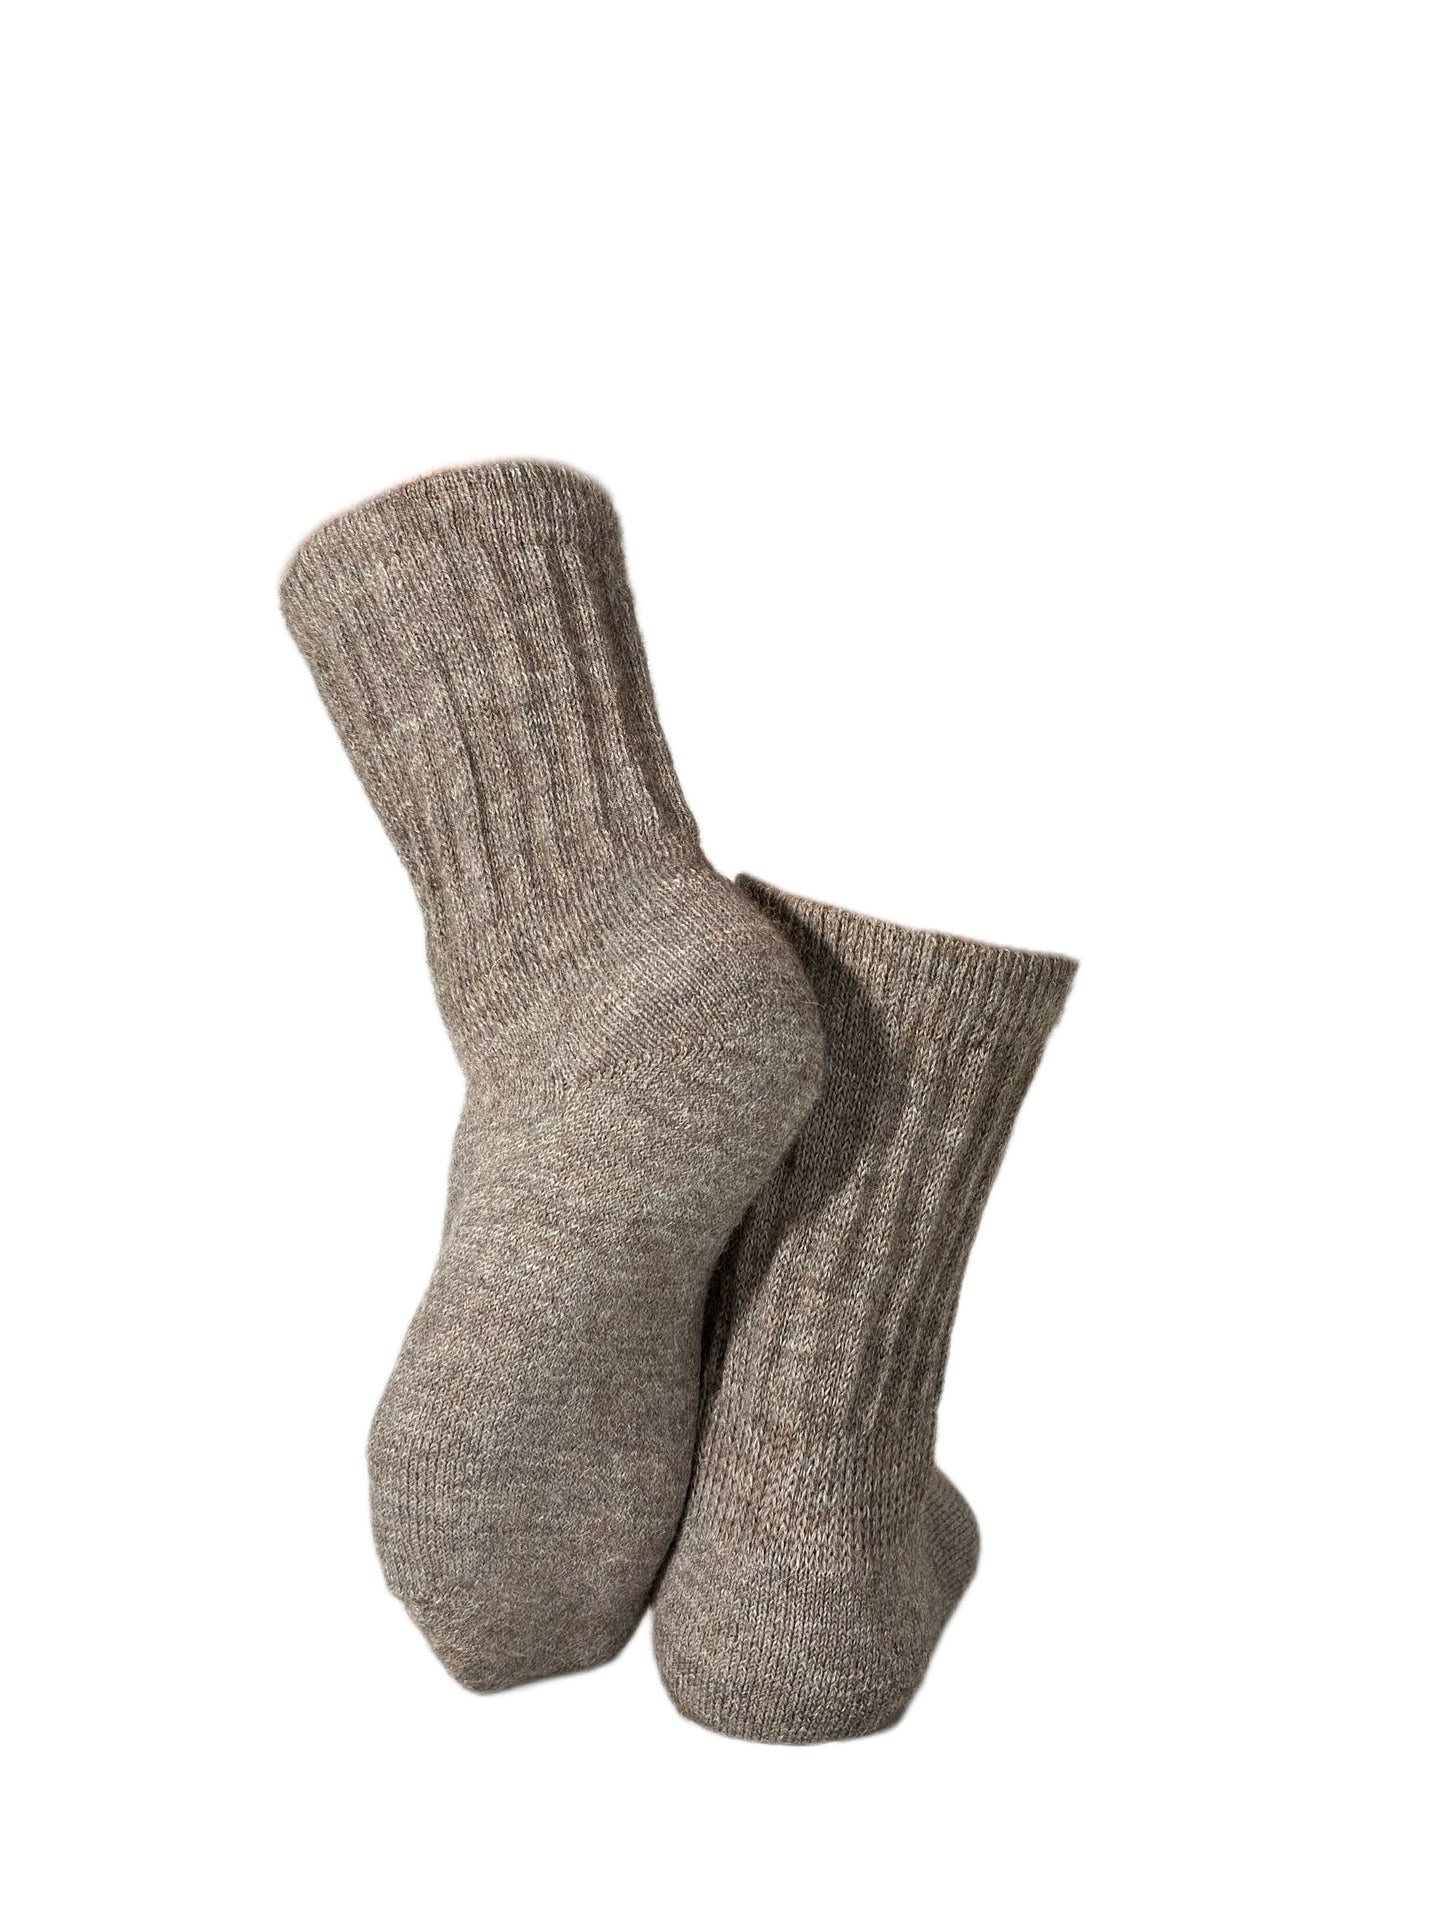 Meråker-sokken